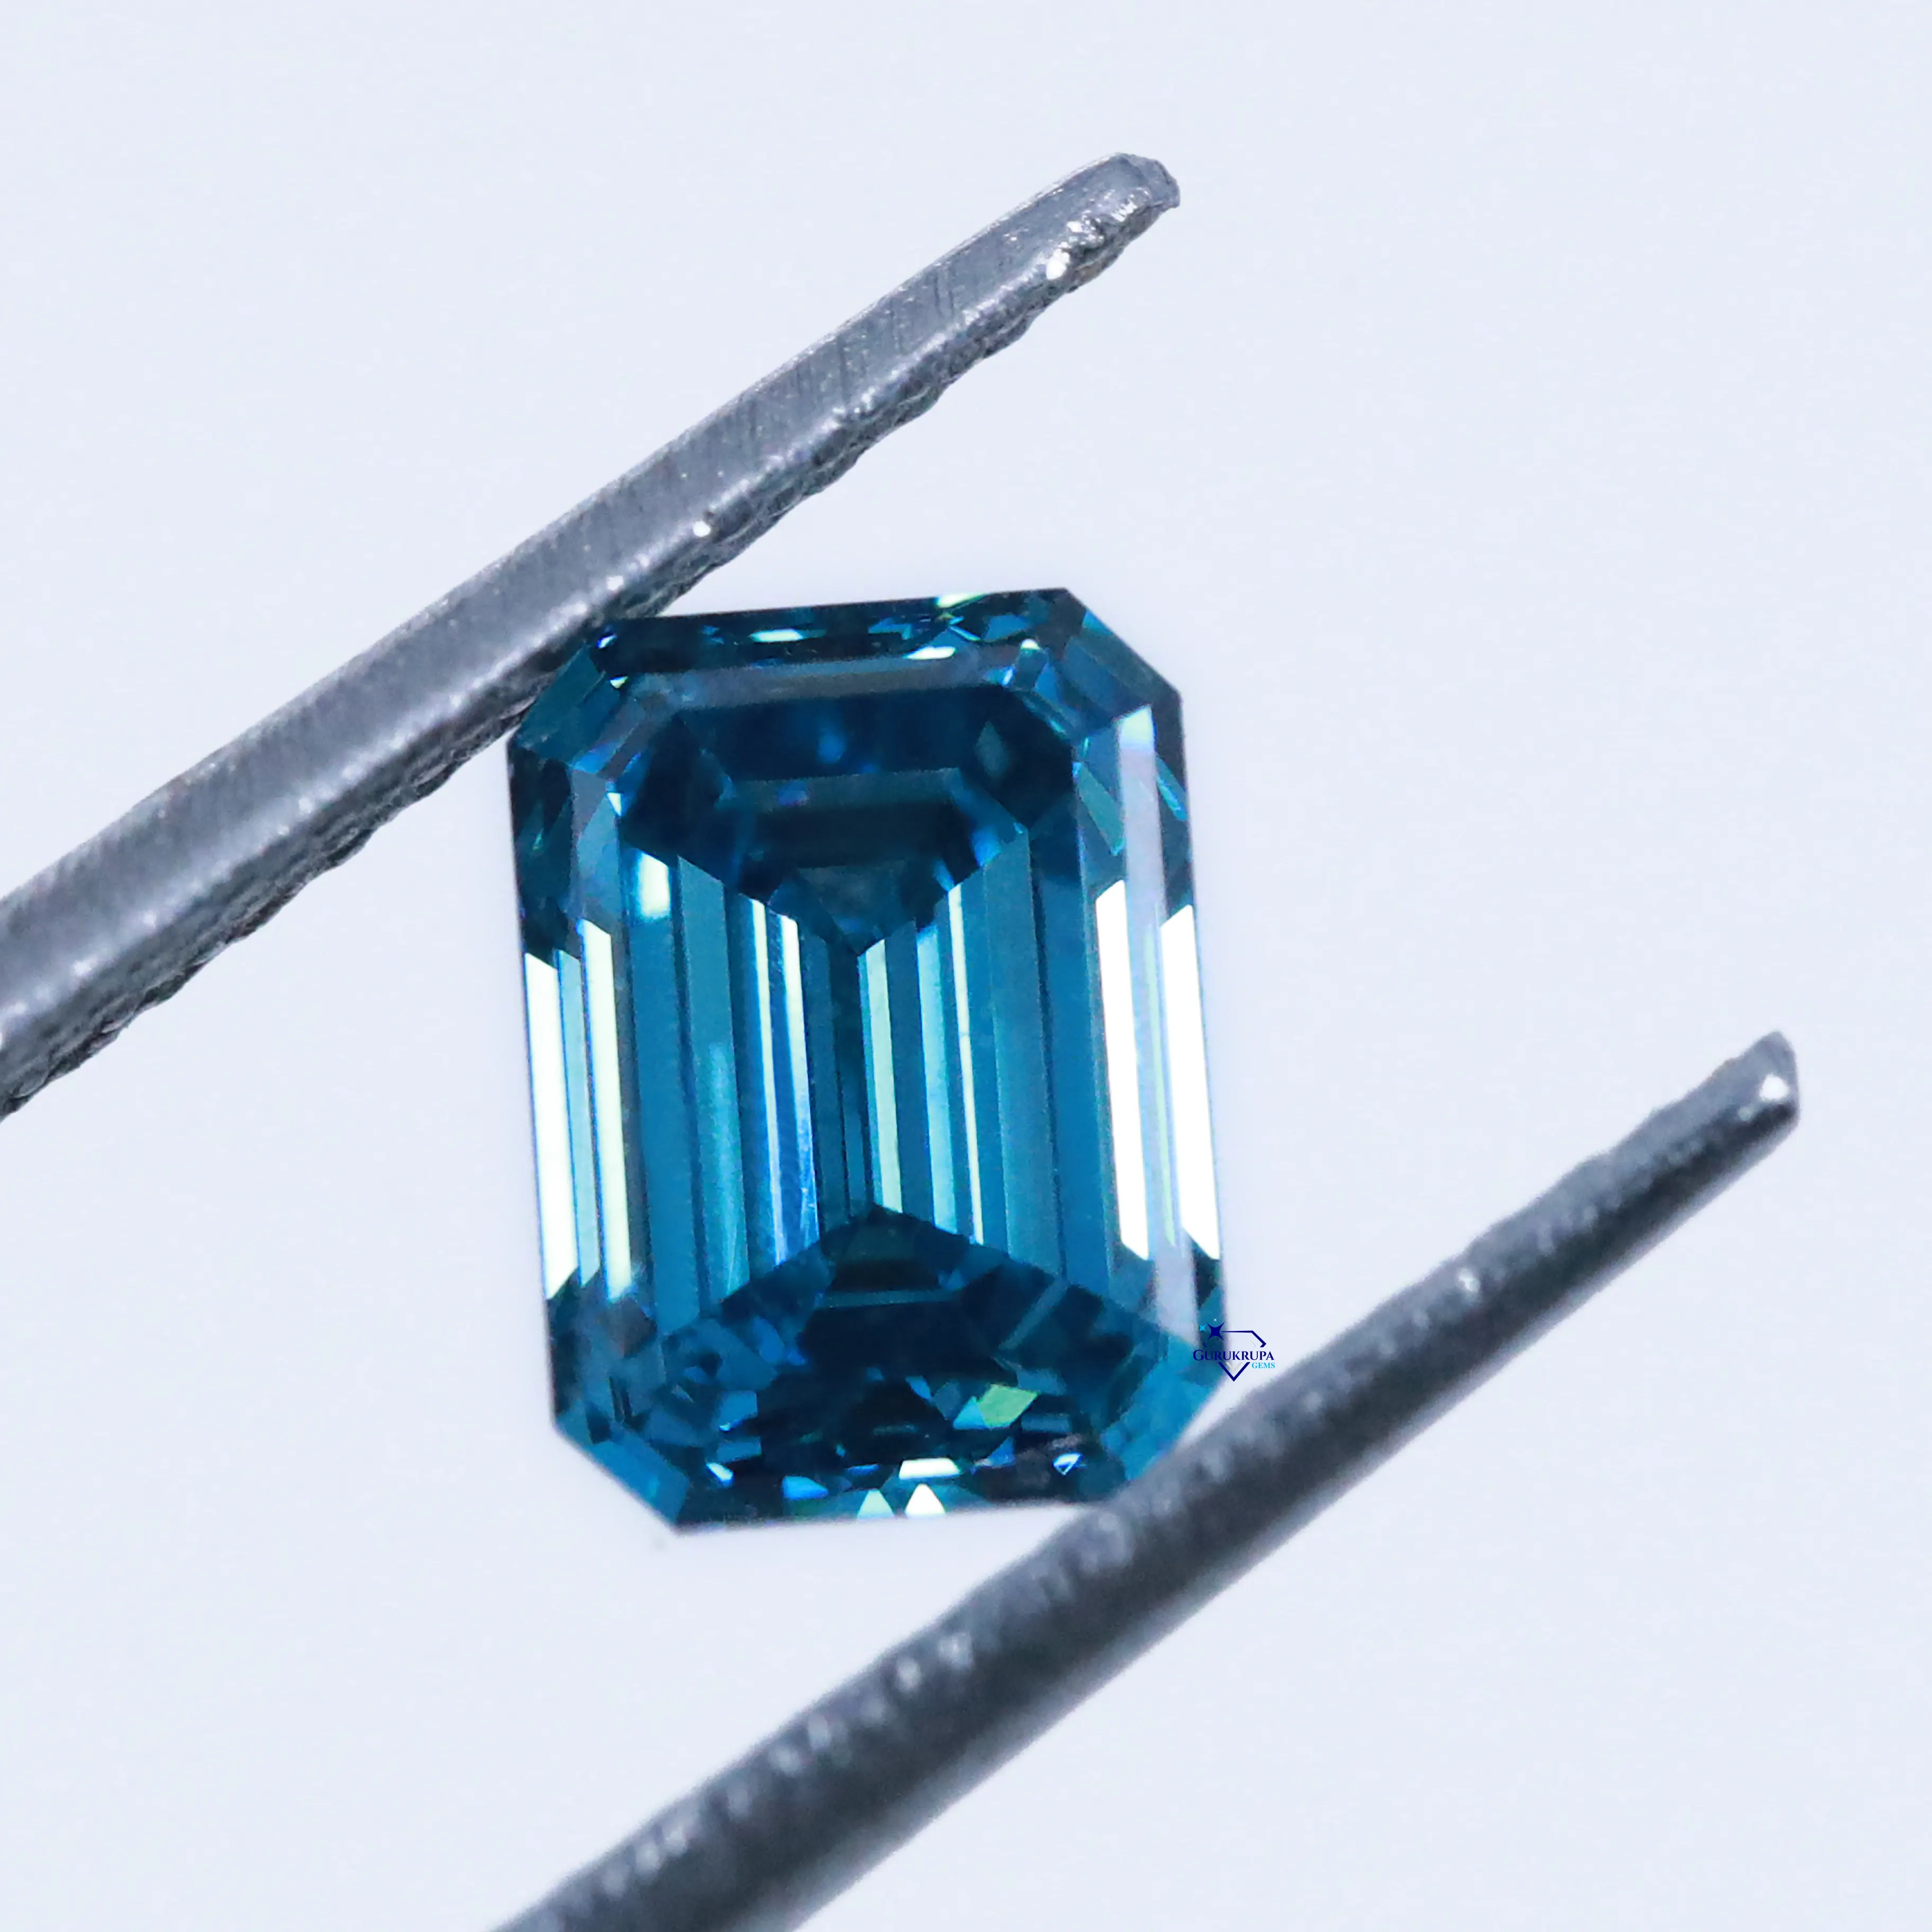 Descubra la belleza deslumbrante con nuestros diamantes cultivados en laboratorio de corte esmeralda al por mayor que muestran una claridad VVS impecable a precios de mayorista